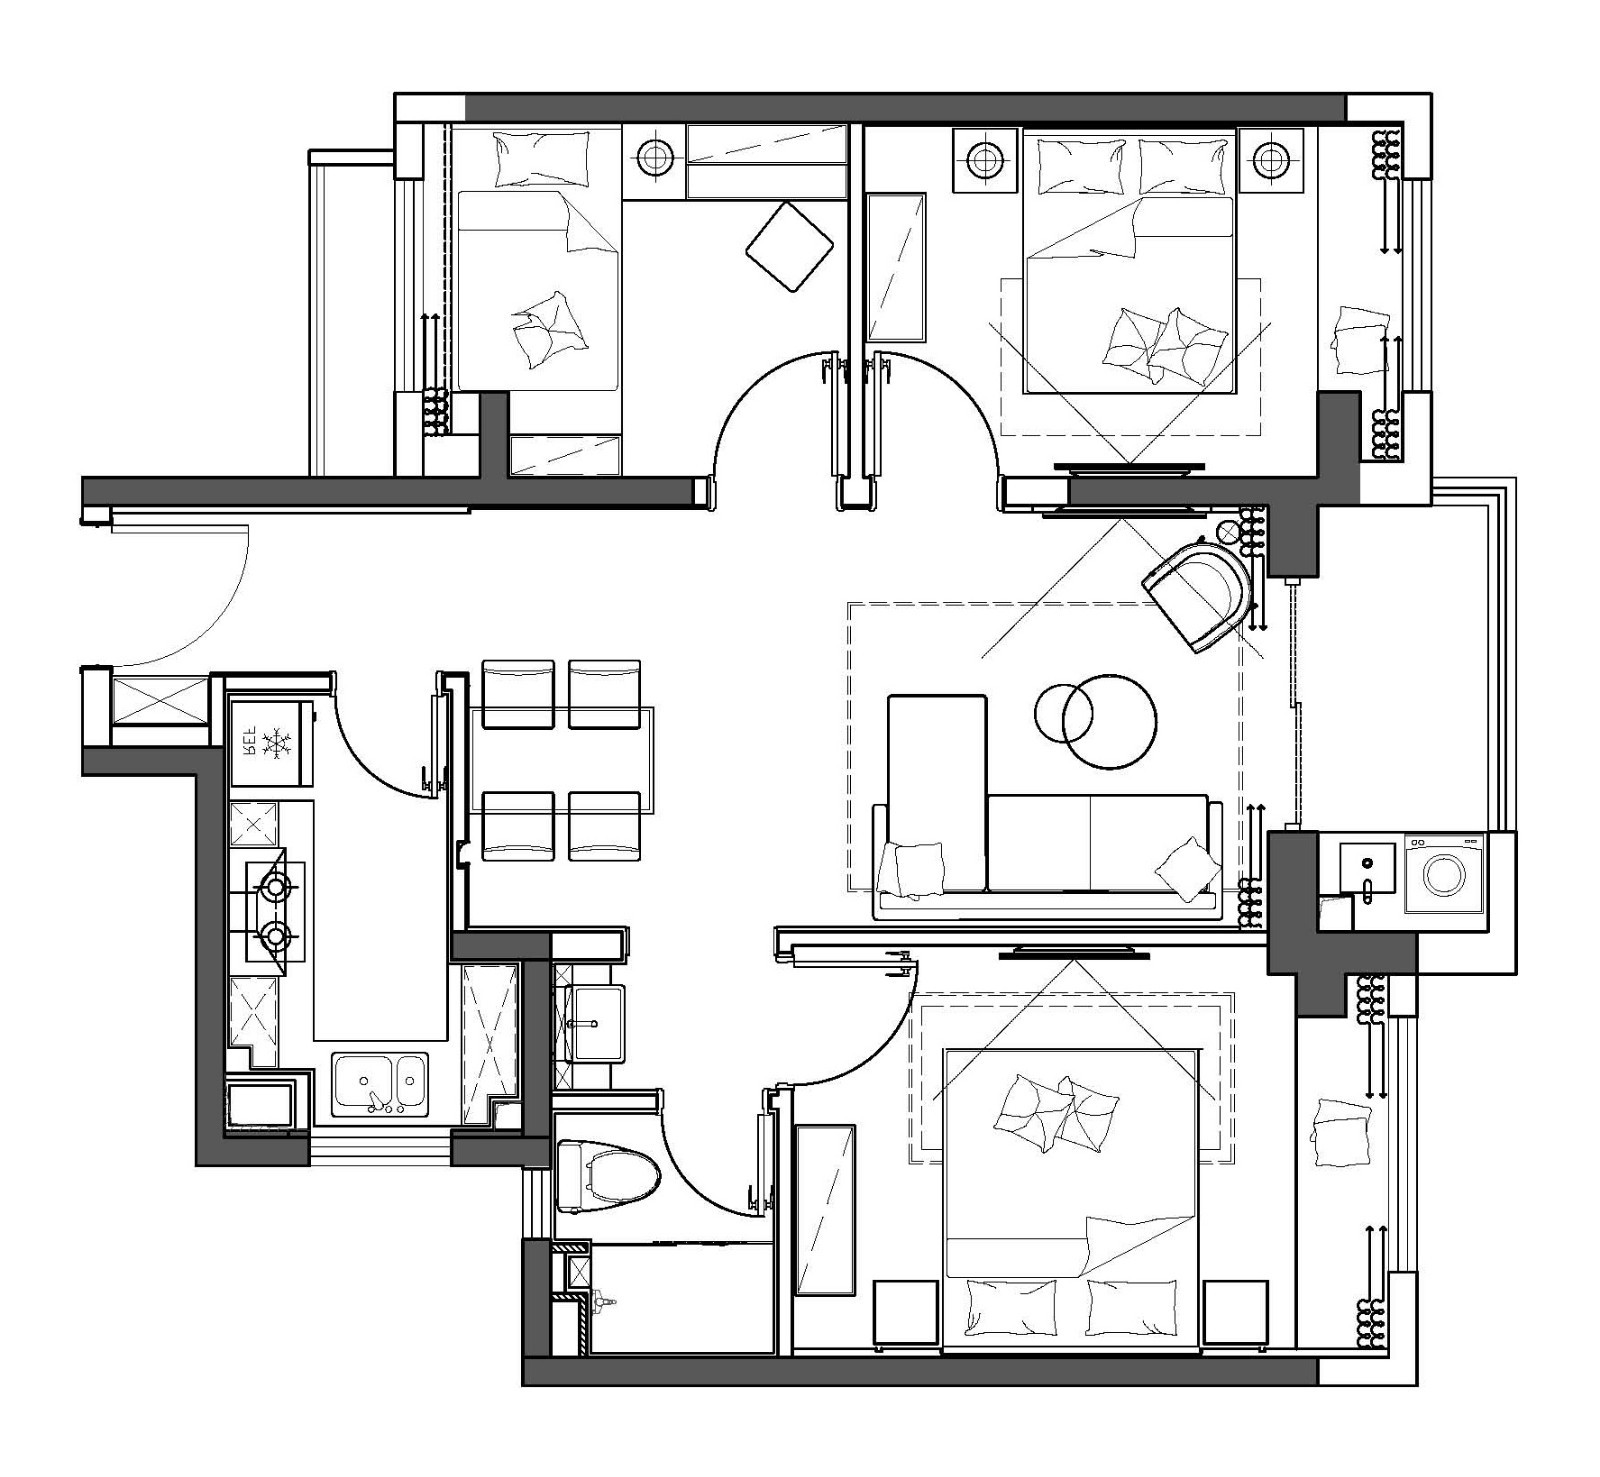 120现代三房装修效果图,家是精神的「庇护所」装修案例效果图-美广网